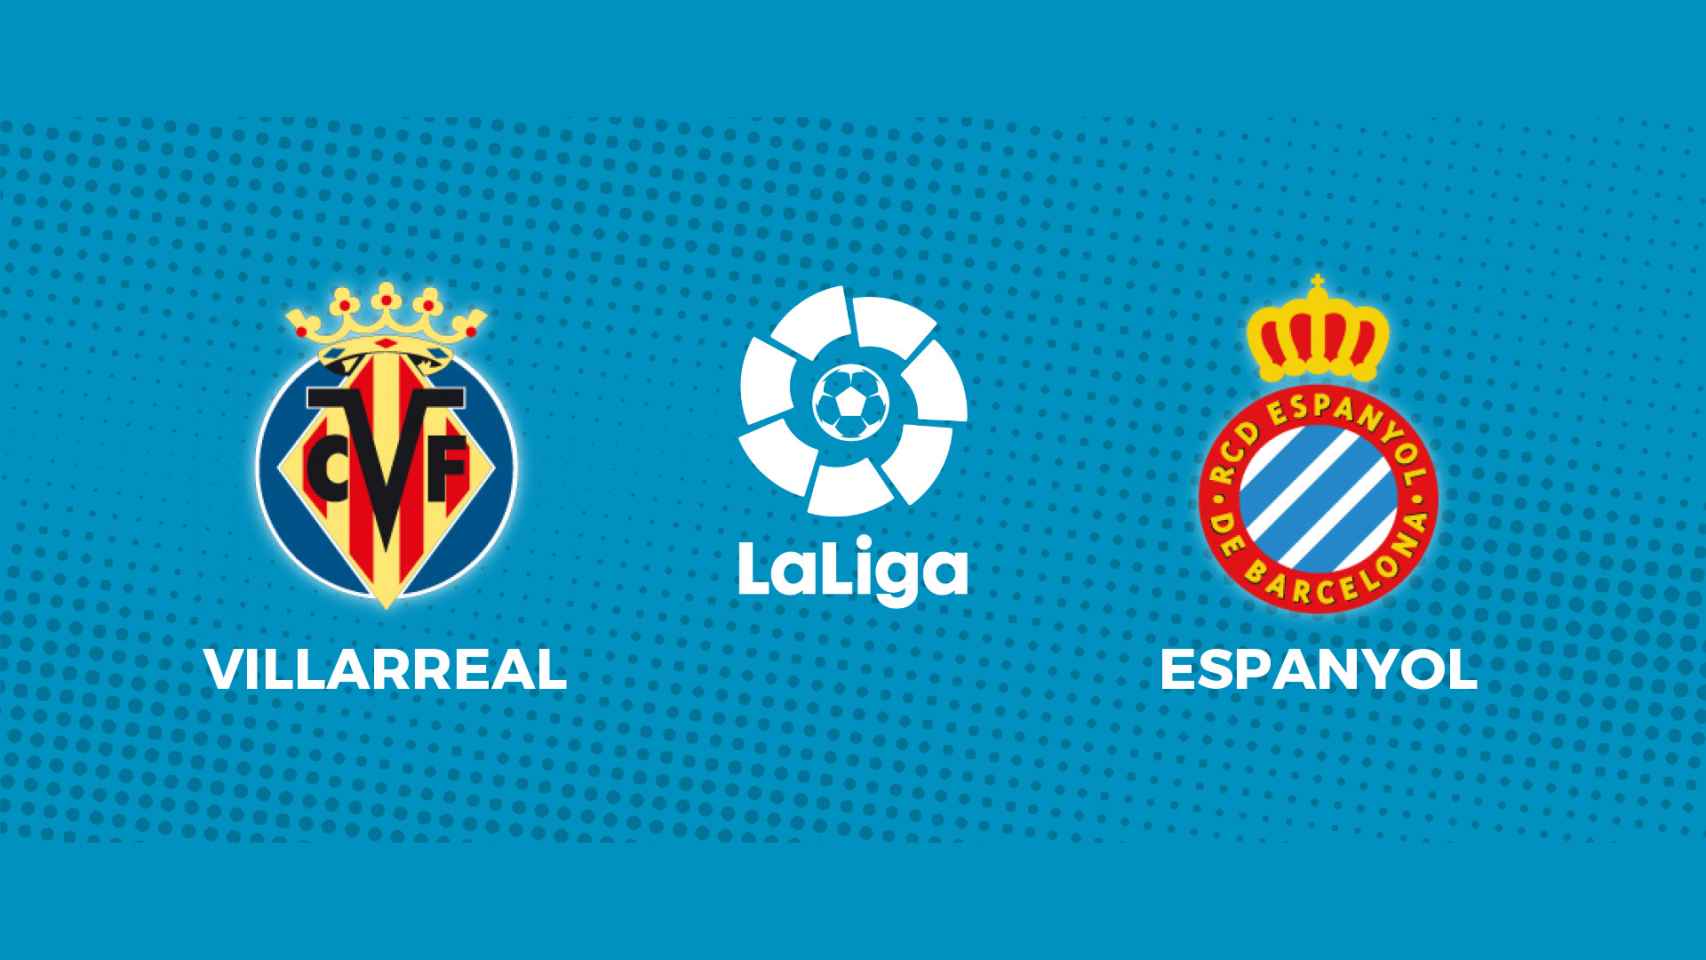 Villarreal - Espanyol, La Liga en directo